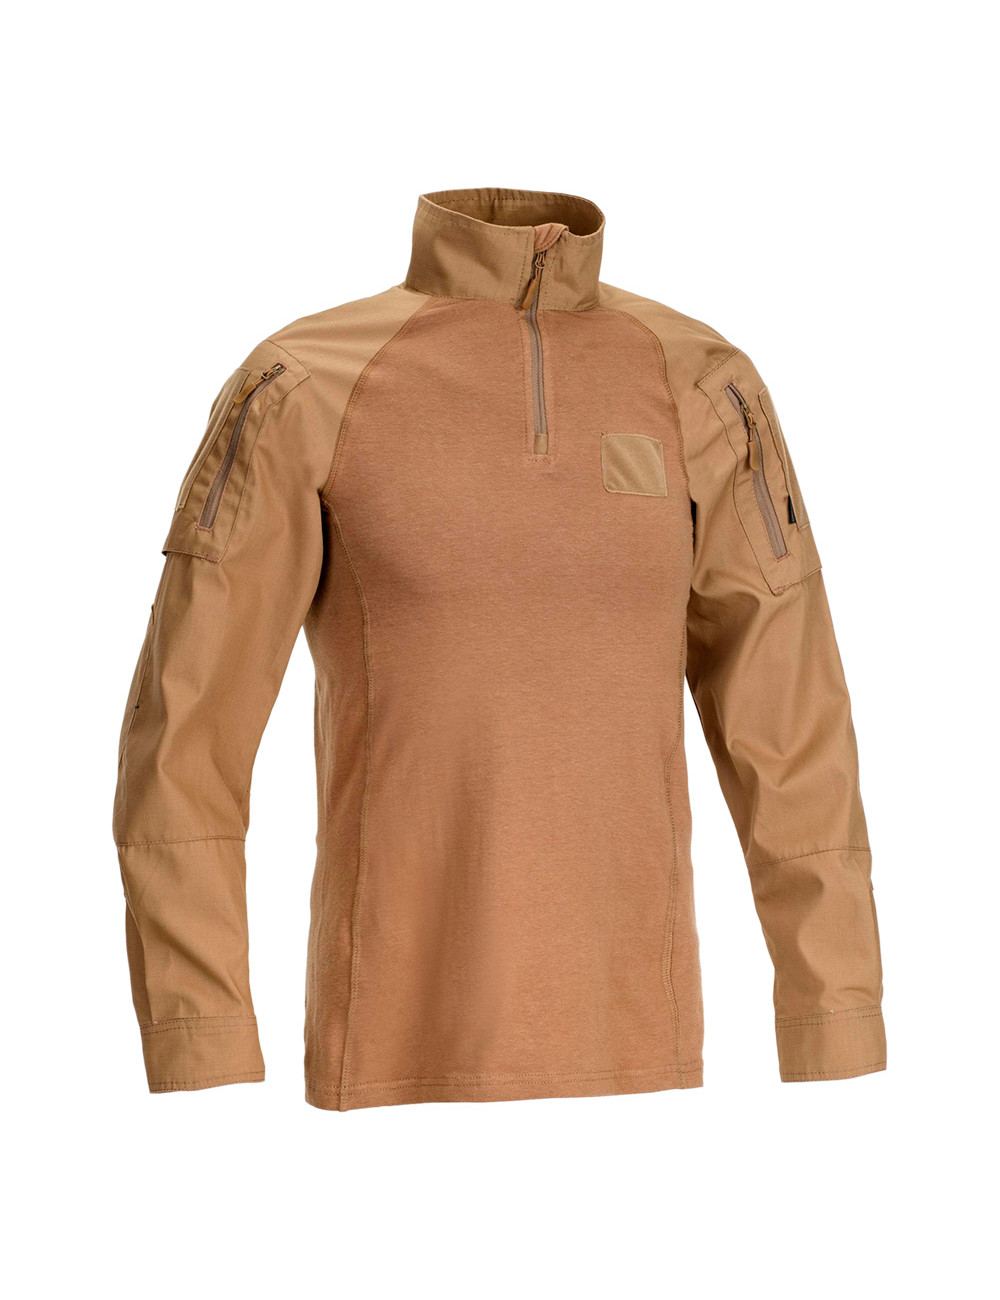 DEFCON 5 D5-3267 CT Tiger Combat Shirt COYOTE TAN XL